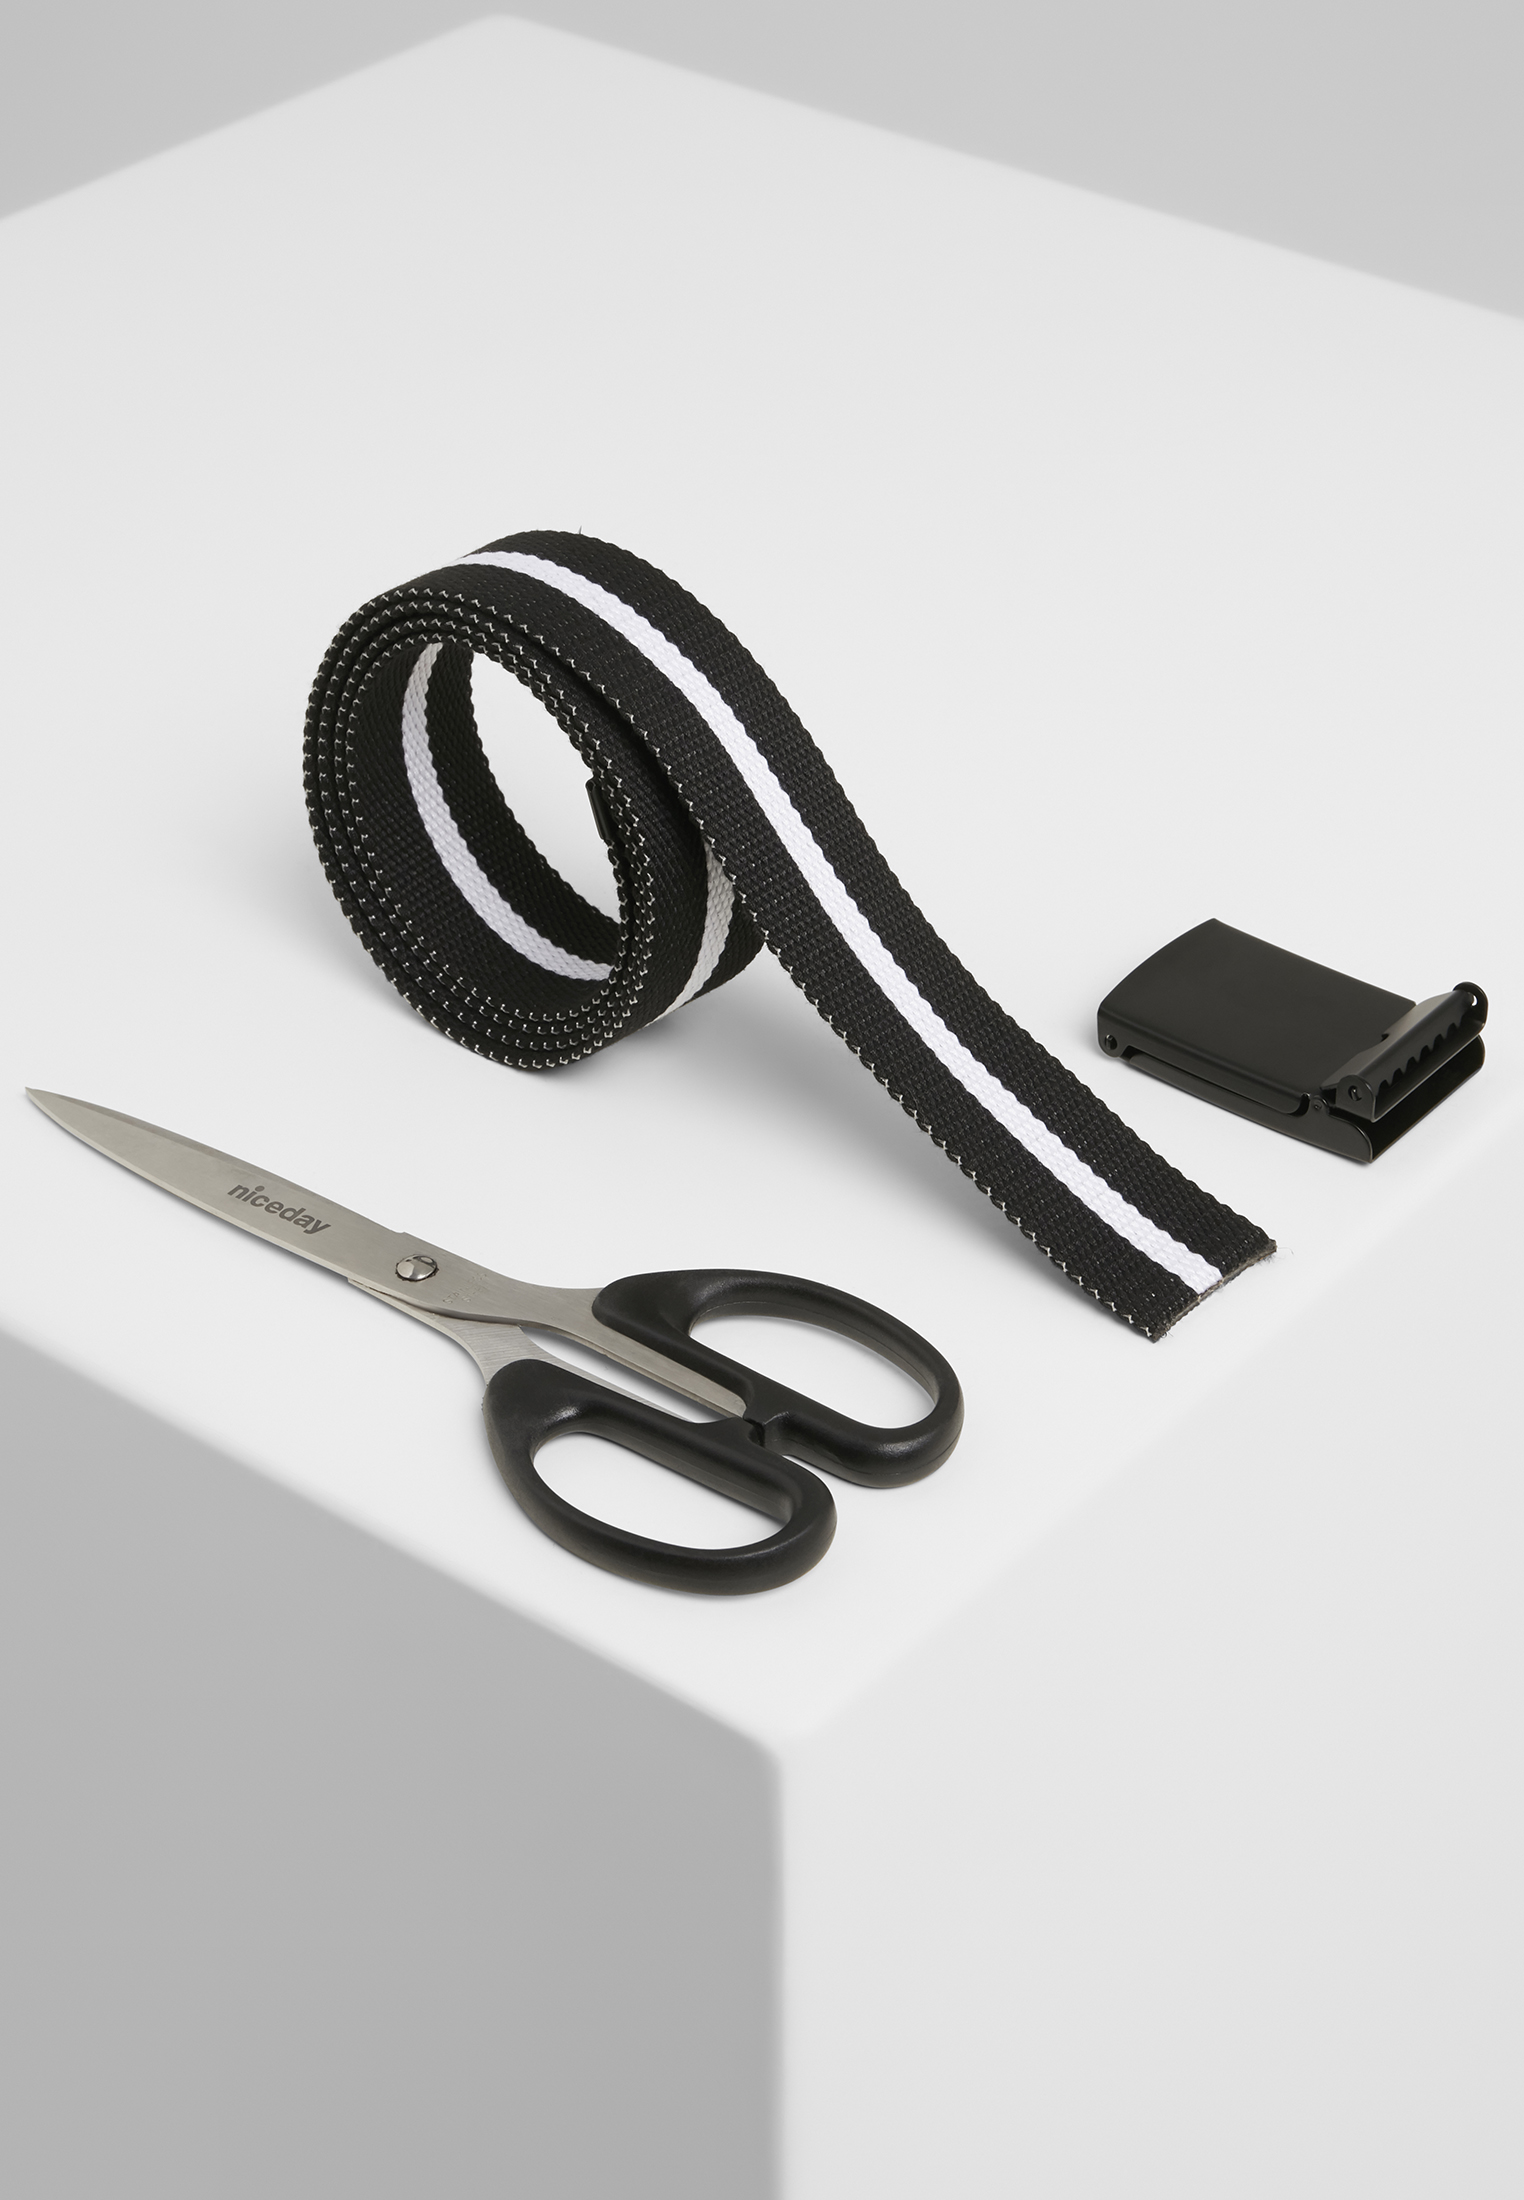 G?rtel Canvas Belts in Farbe black white stripe/black